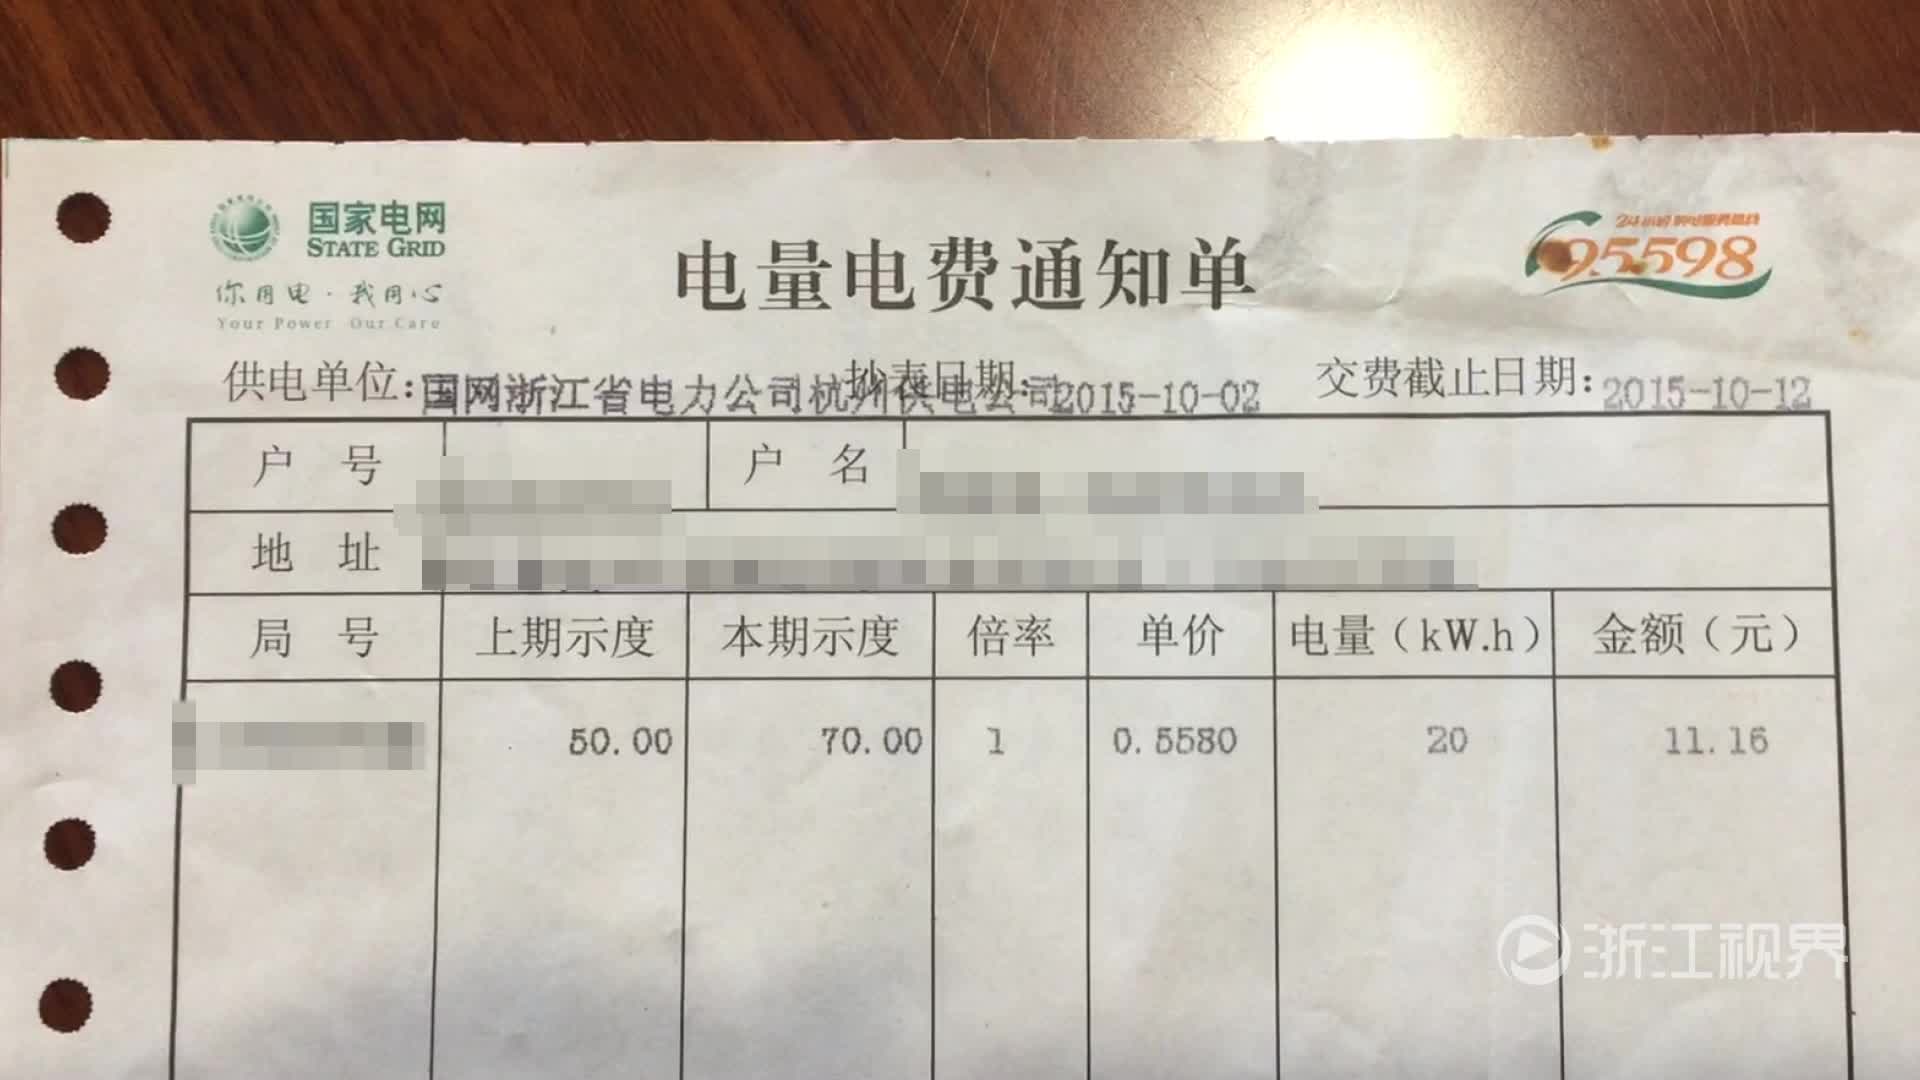 纸质电费单将"退役" 杭州进入电子电费通知单时期